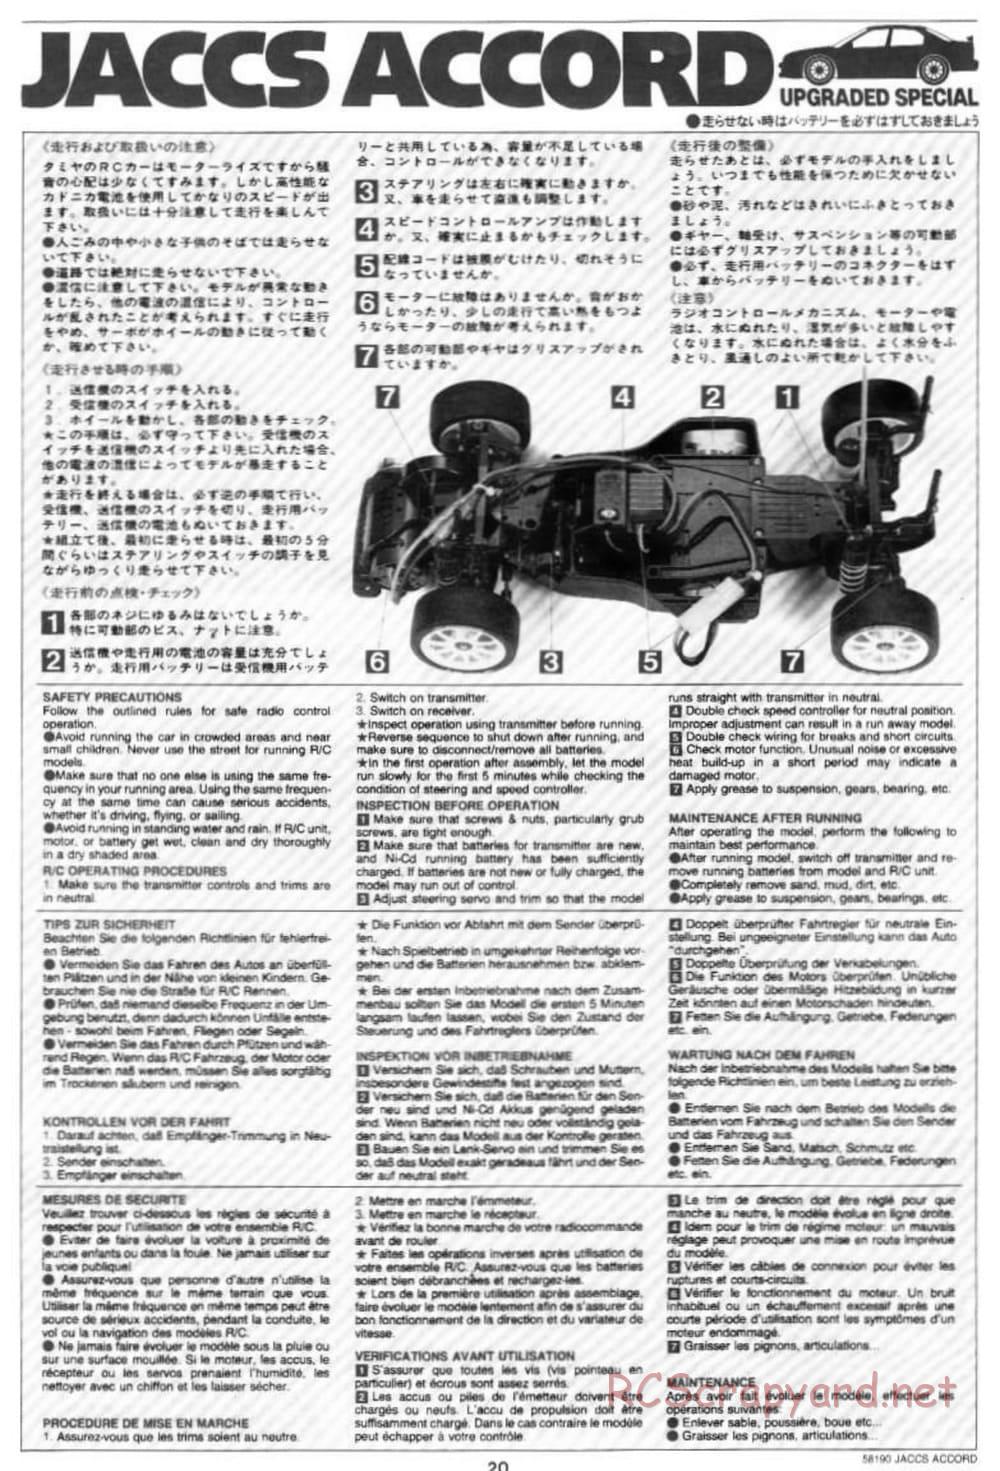 Tamiya - JACCS Honda Accord - FF-01 Chassis - Manual - Page 20